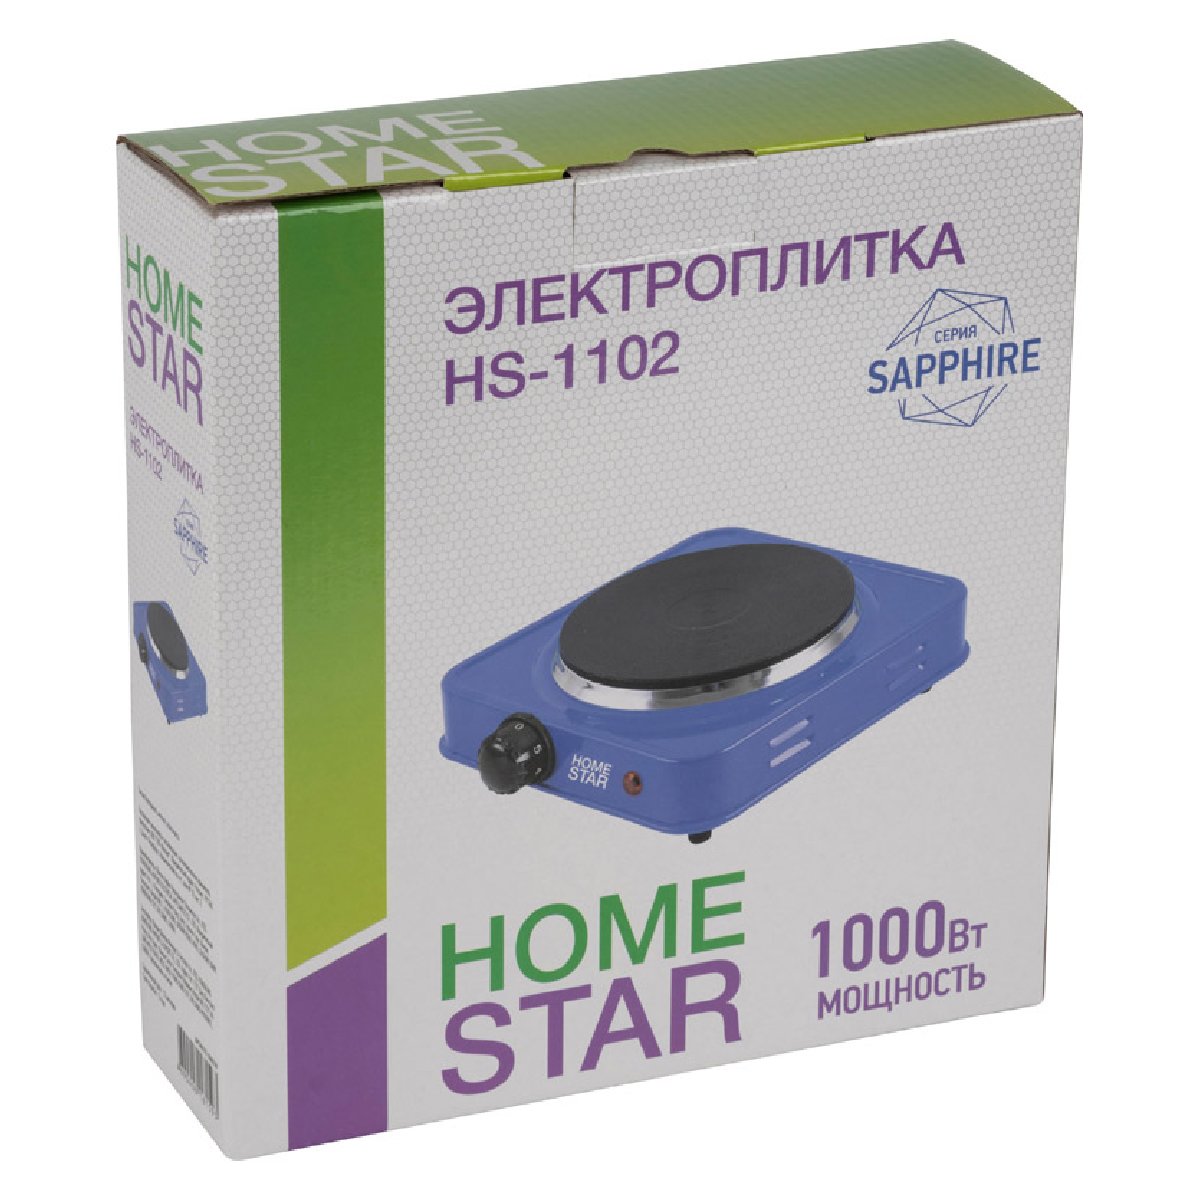 Электроплитка HOMESTAR HS-1102, чугун, серия сапфир (008749)